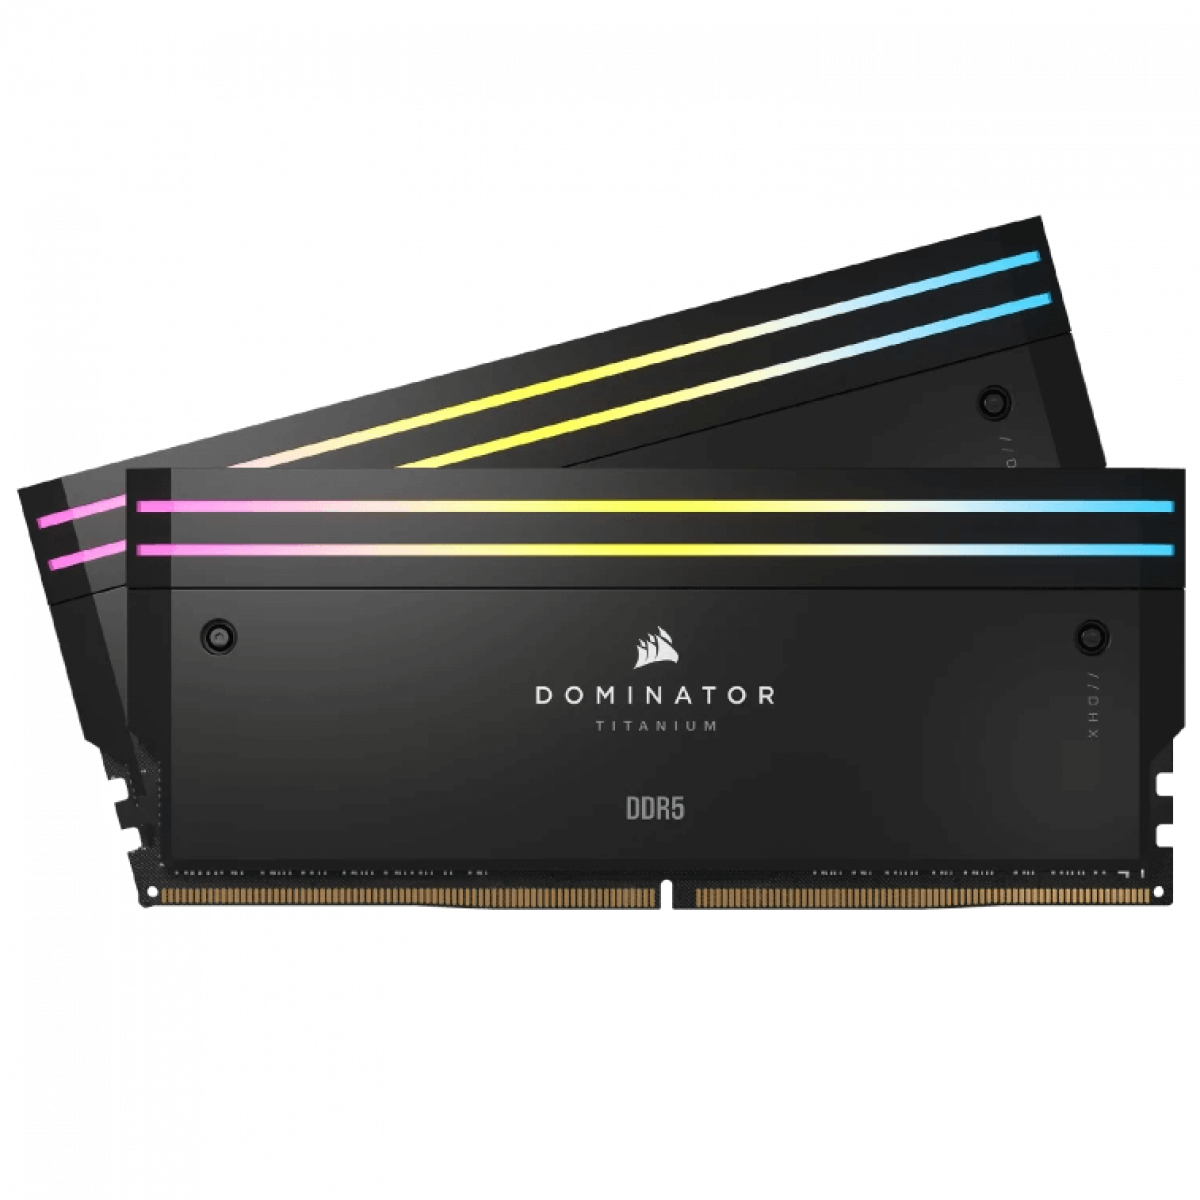 CORSAIR DOMINATOR TITANIUM Black DDR5, 7200MT/s 32GB 2x16GB DIMM, XMP 3.0, RGB LED, 1.4V